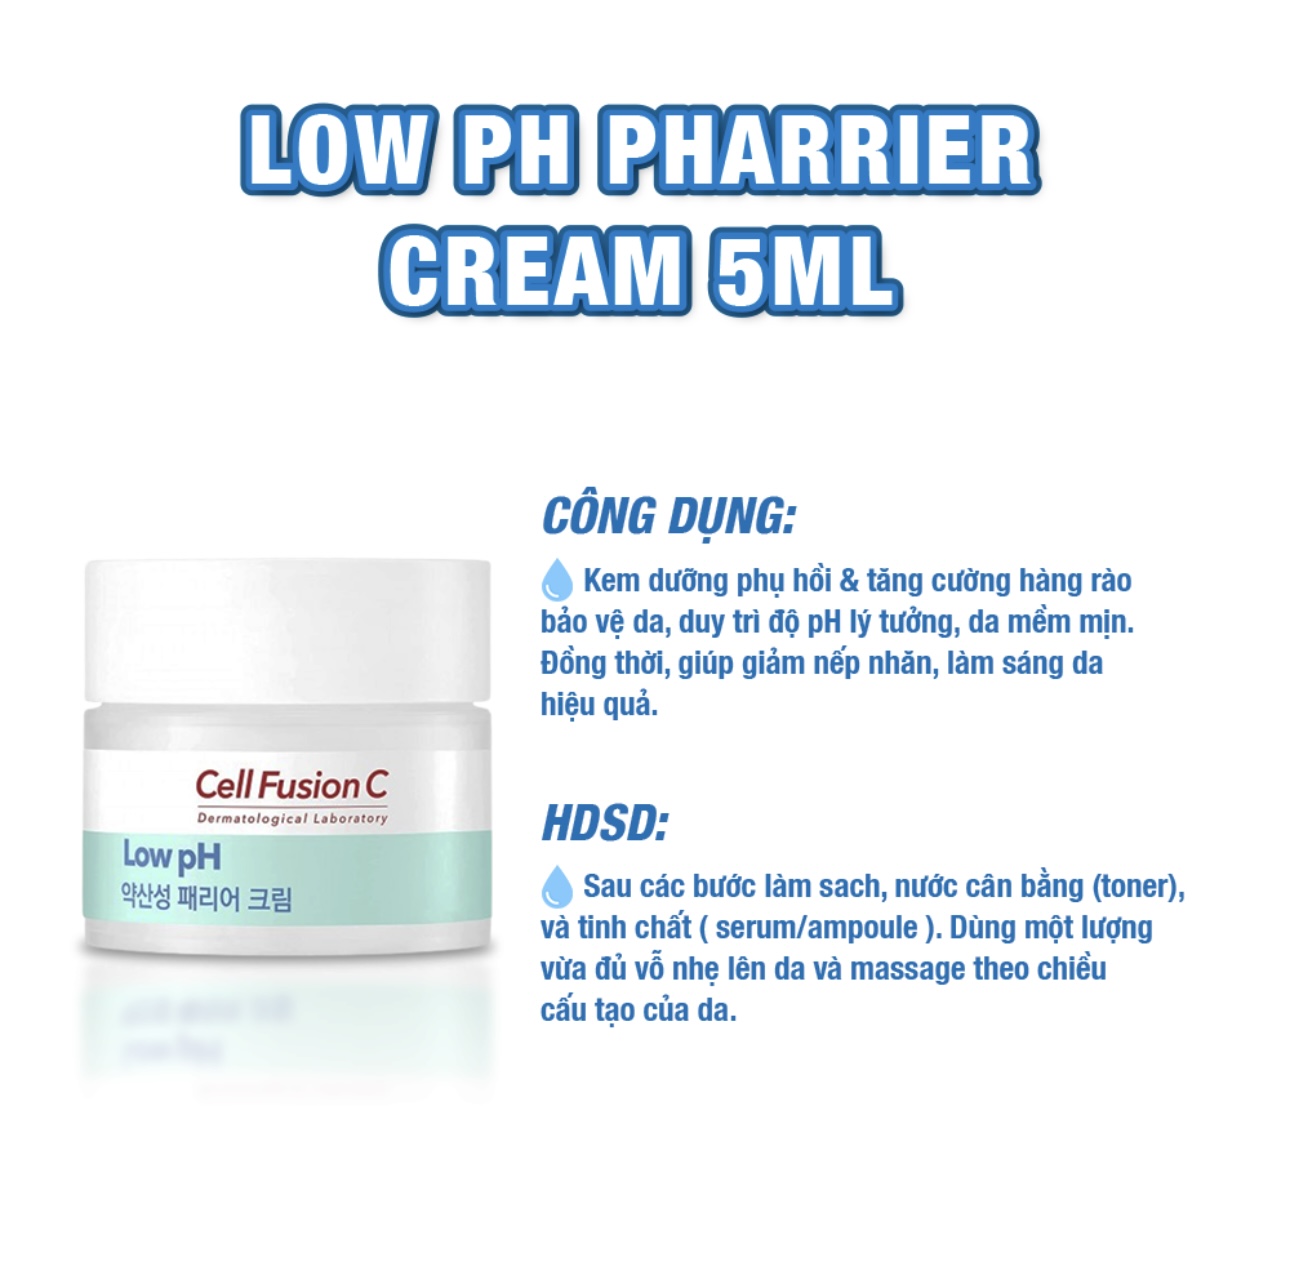 Kem Dưỡng Cấp Ẩm Tăng Cường Hàng Rào Bảo Vệ Da Cell Fusion C Low pH pHarrier Cream (55ml)